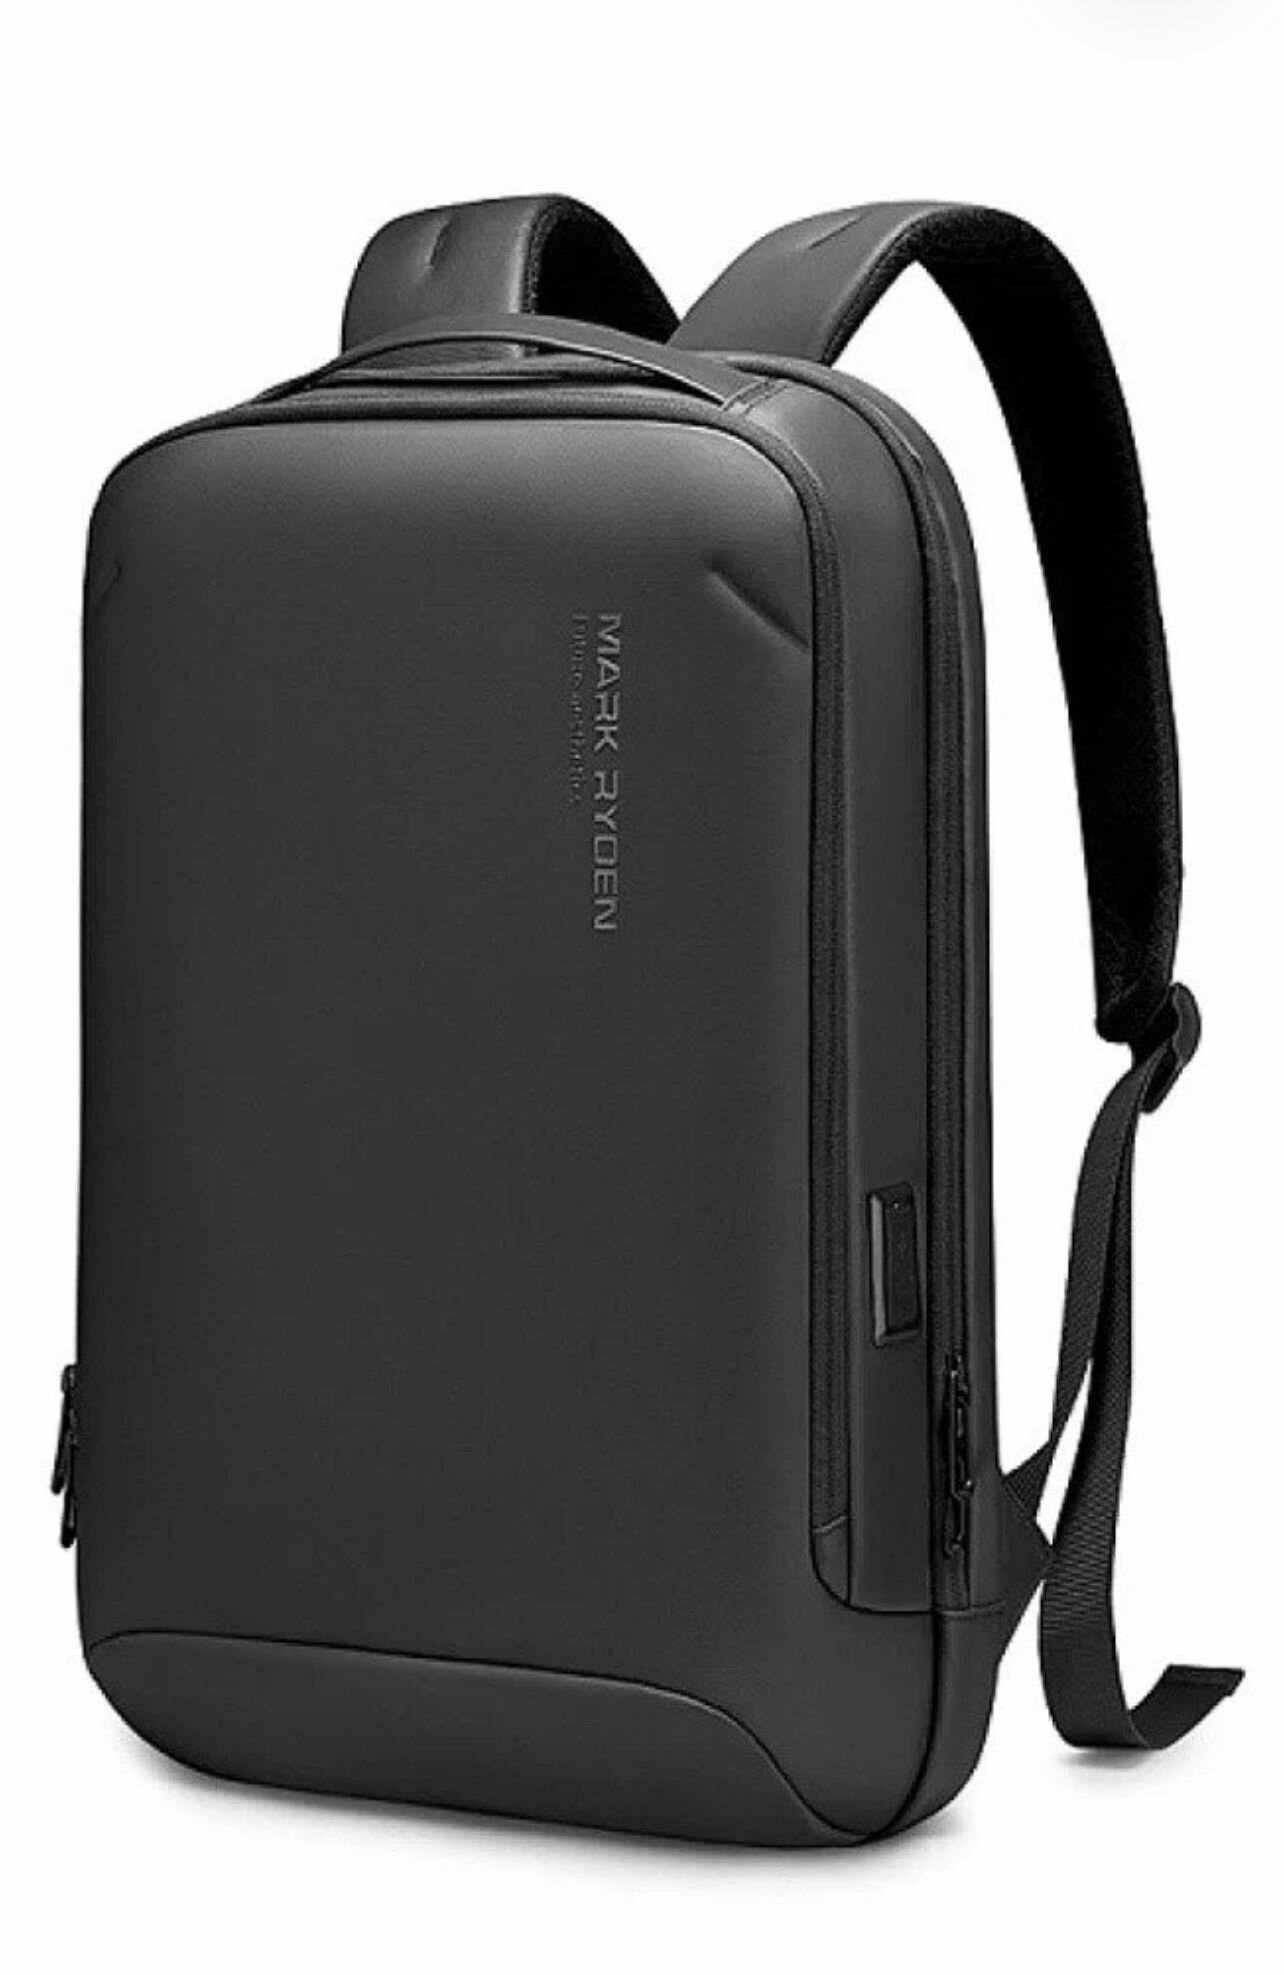 Рюкзак Mark Ryden MR9008SJ с USB-портом и отделение для ноутбука 17.3, 20 литров